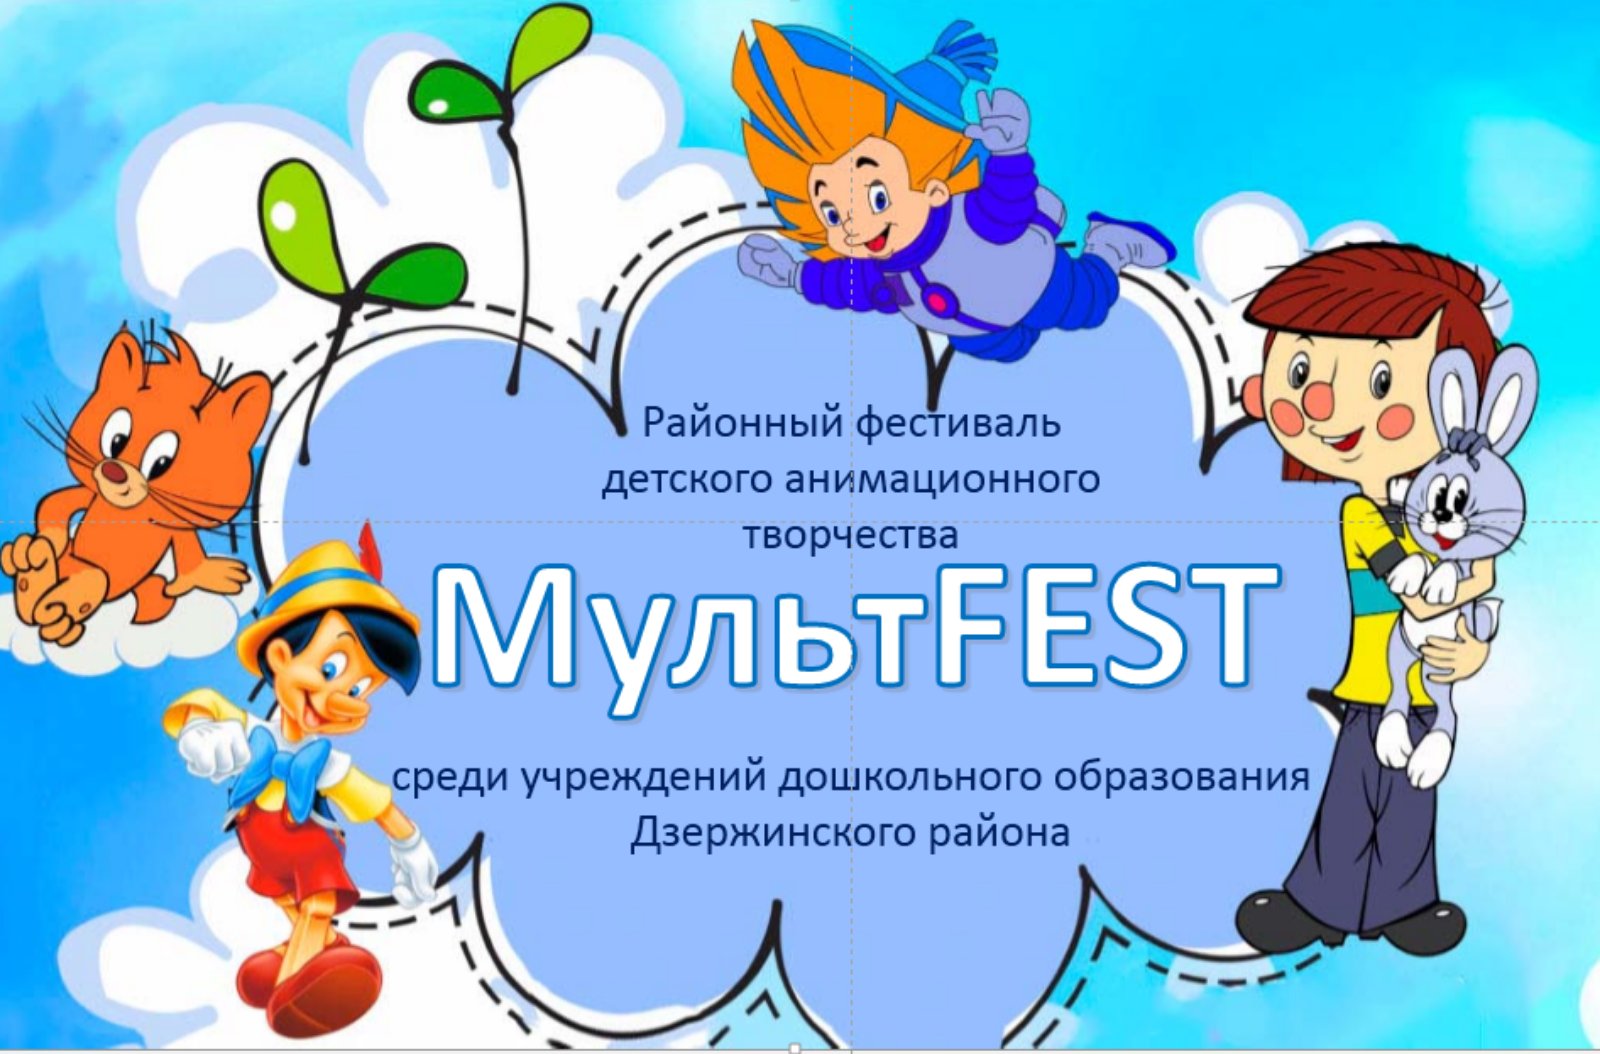 Поздравляем с победой в районном анимационном фестивале "МультFEST"